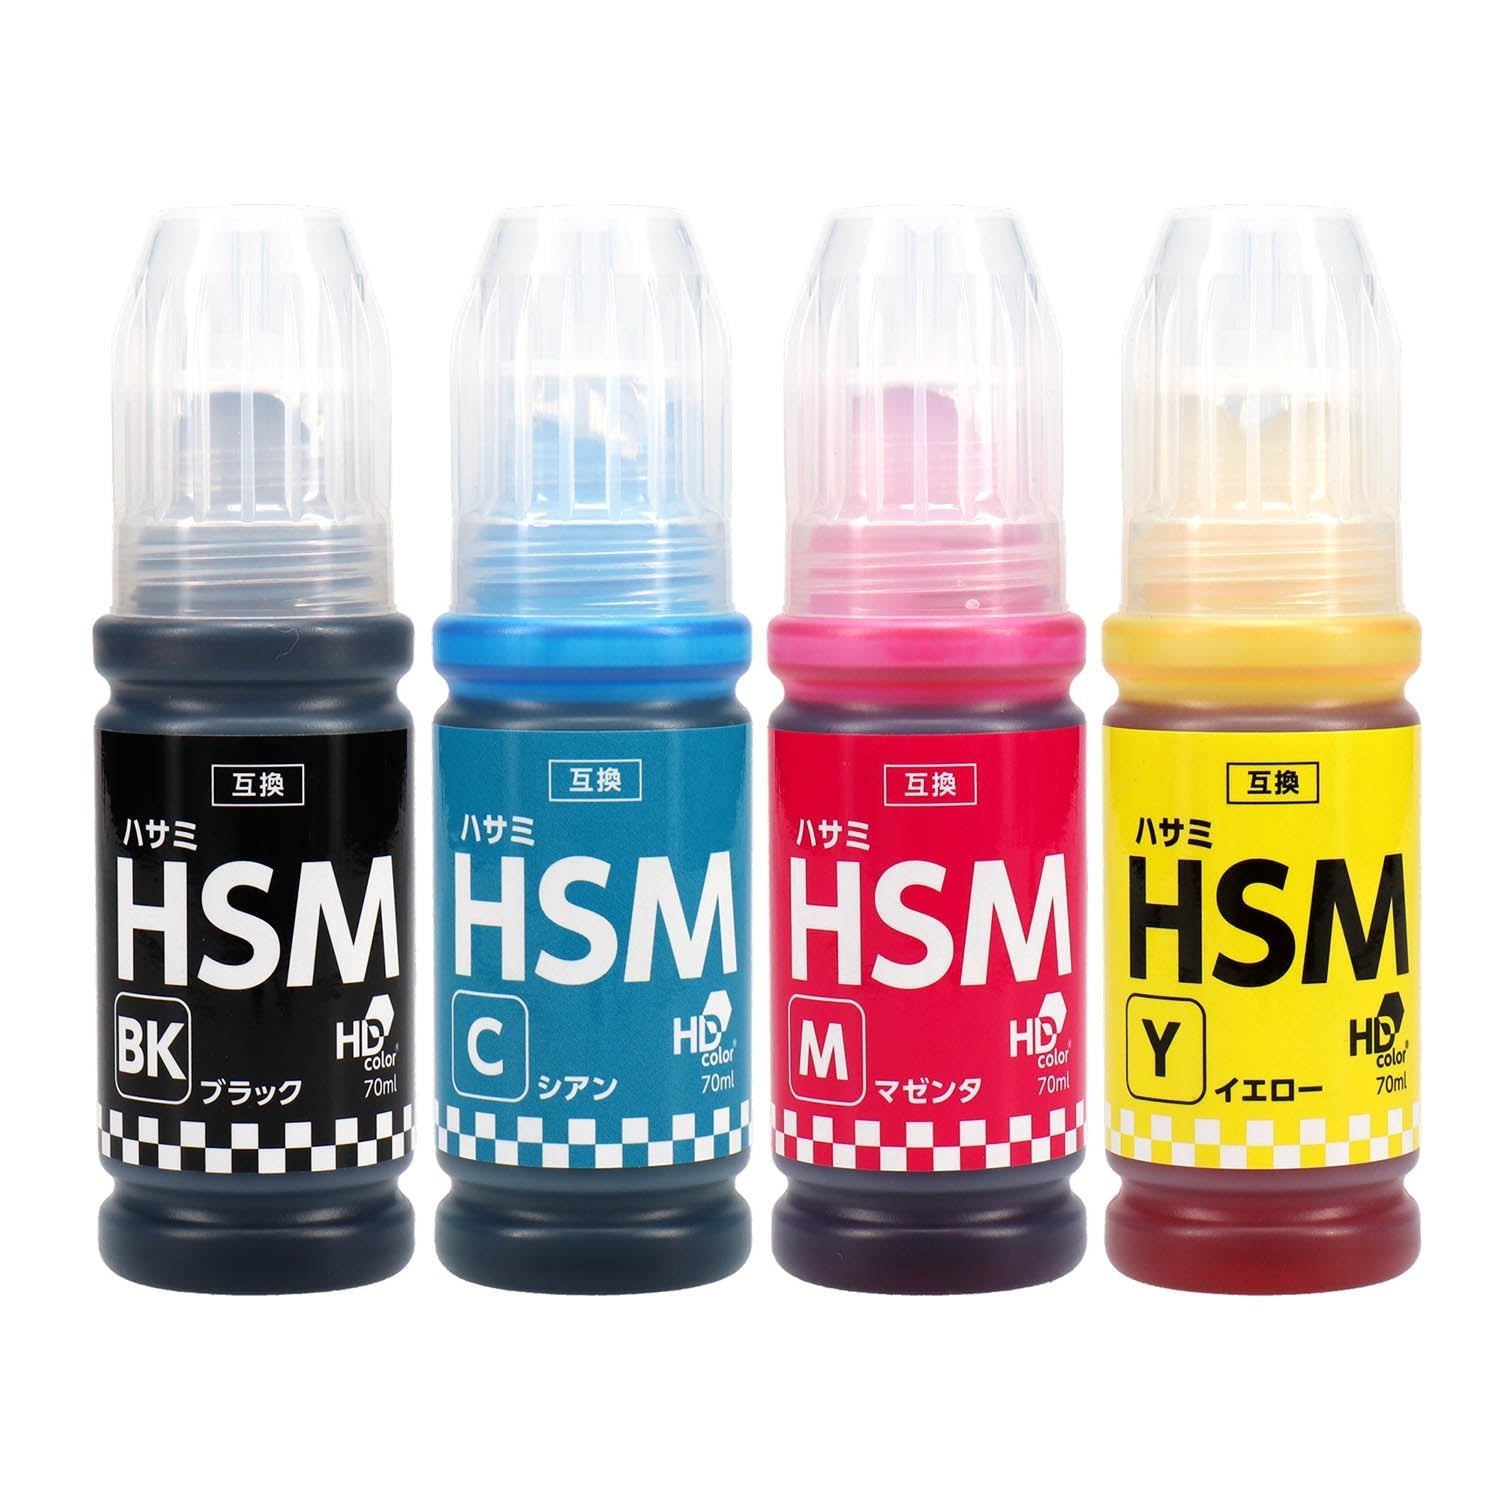 エプソン用 HSM (ハサミ) 互換インクボトル 4本選べるセット